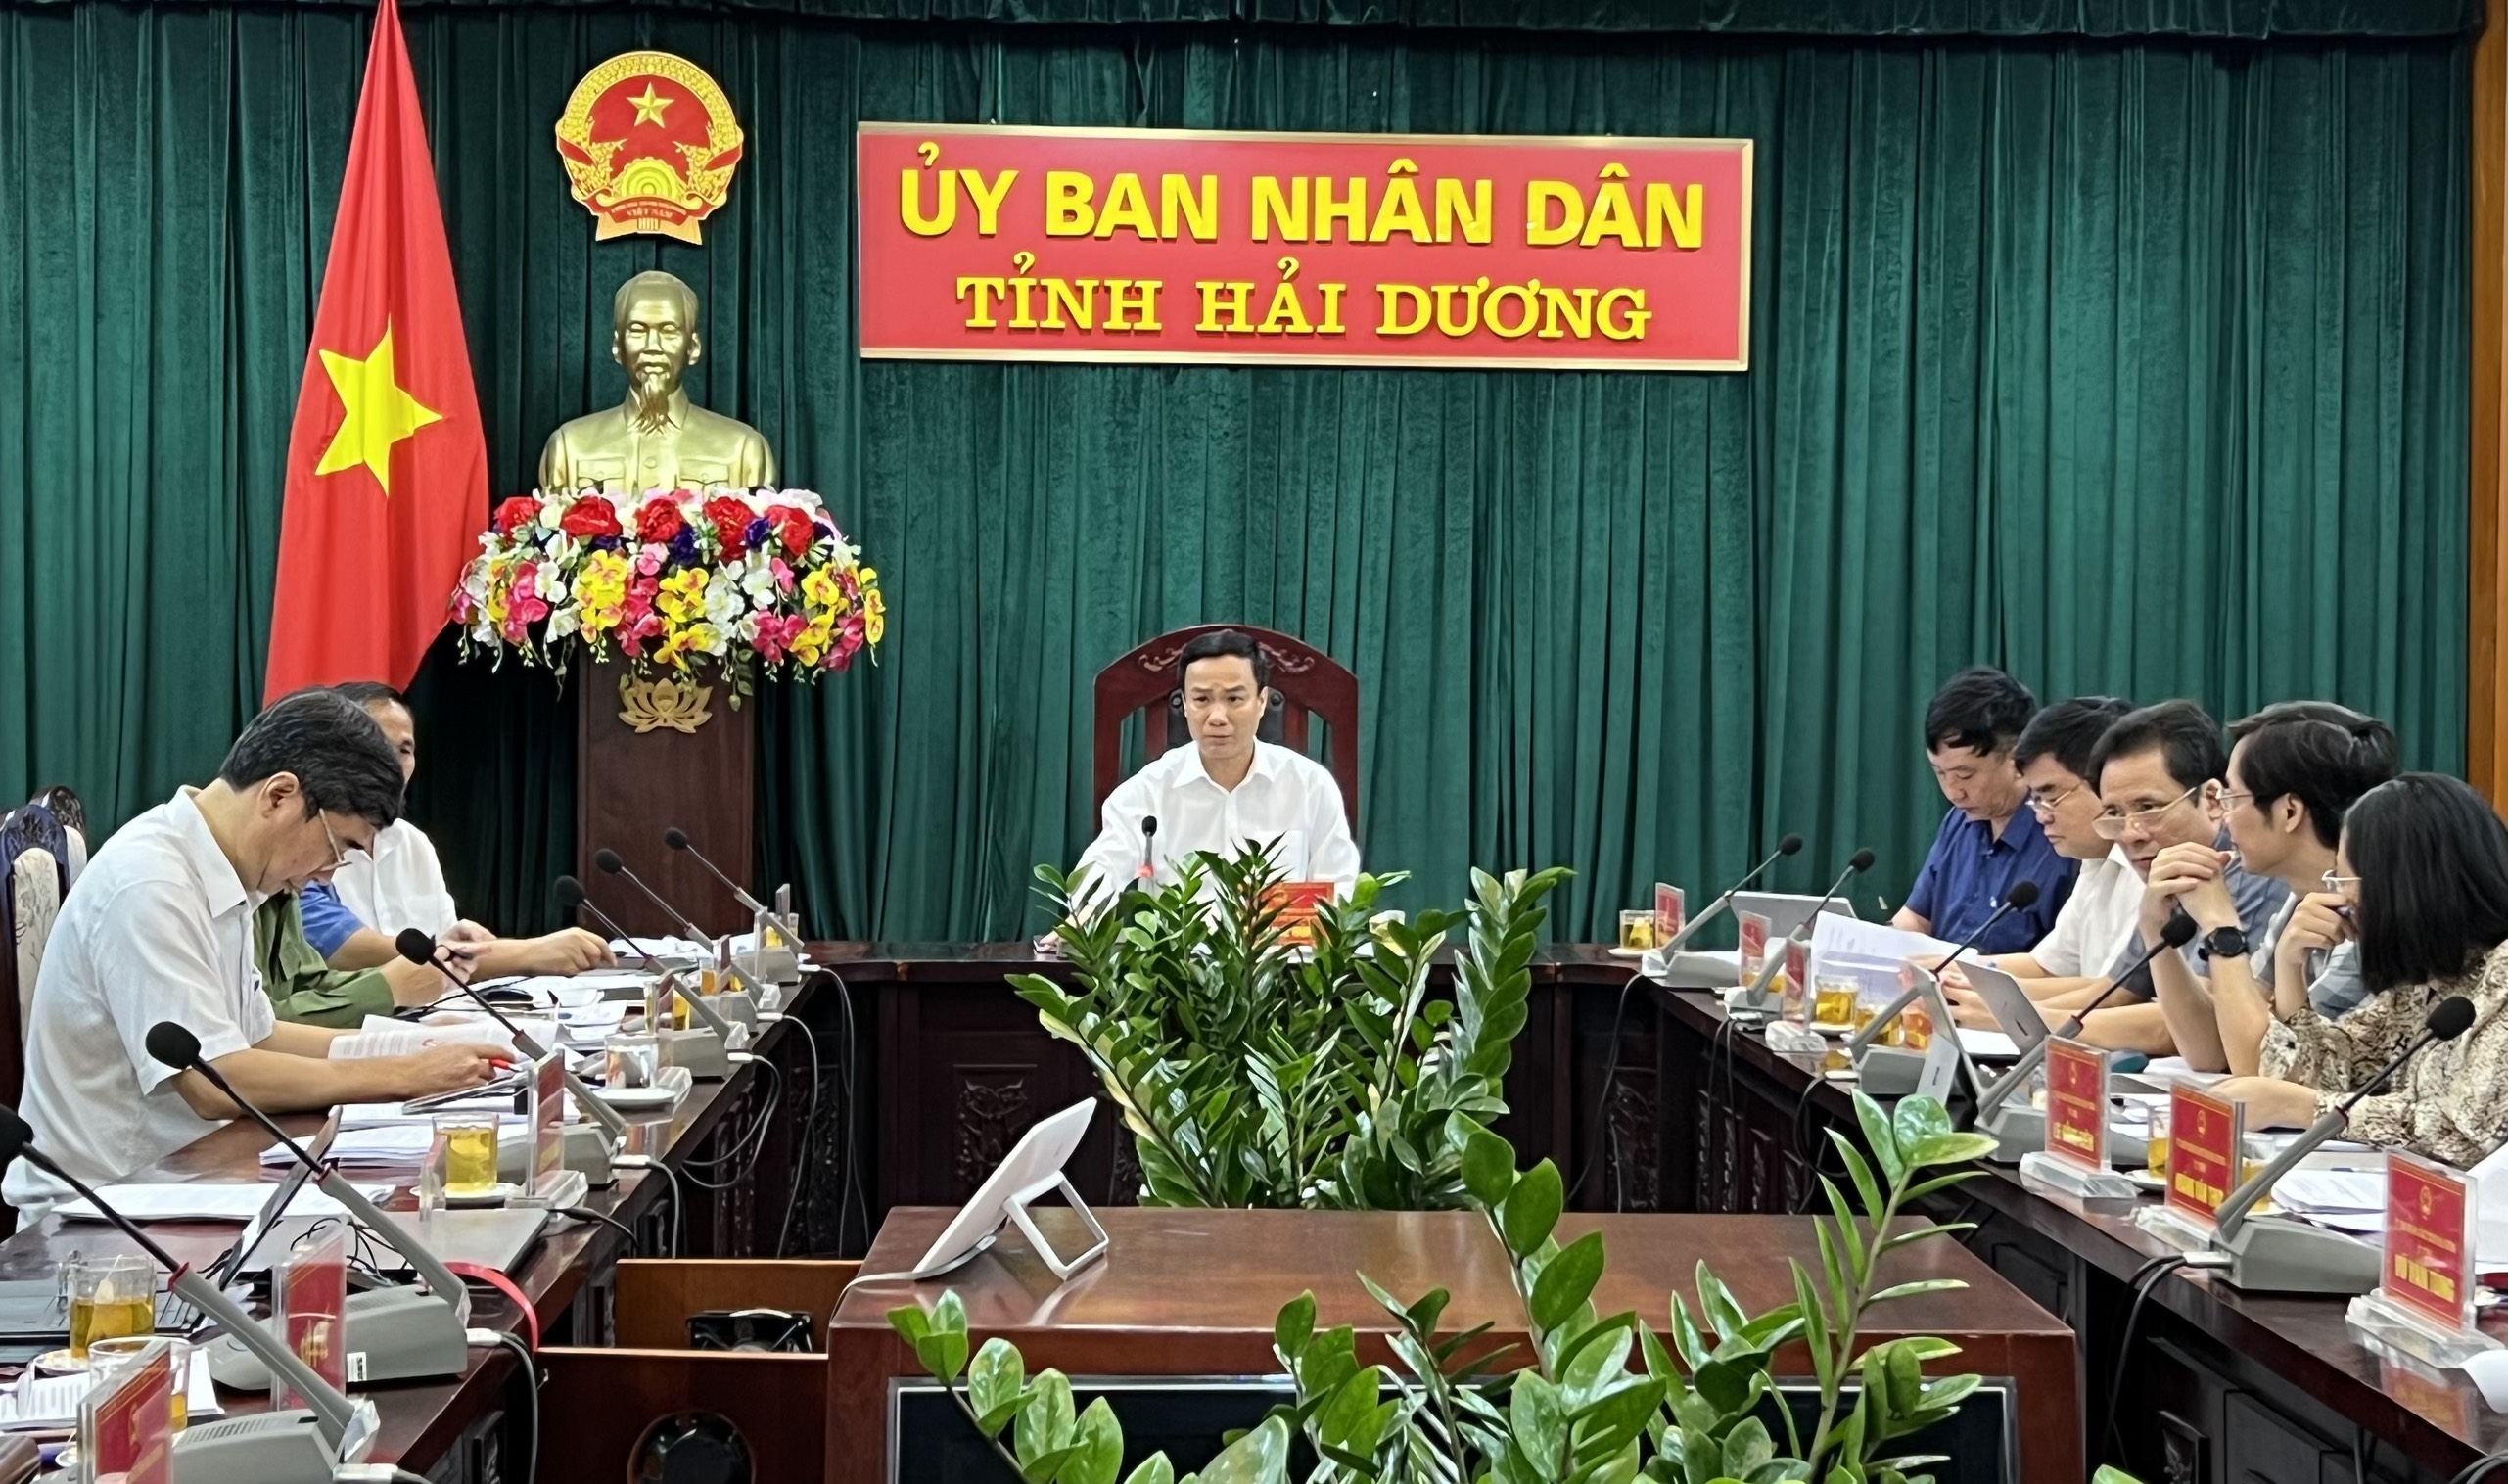 Ông Triệu Thế Hùng, Chủ tịch UBND tỉnh Hải Dương chủ trì phiên họp